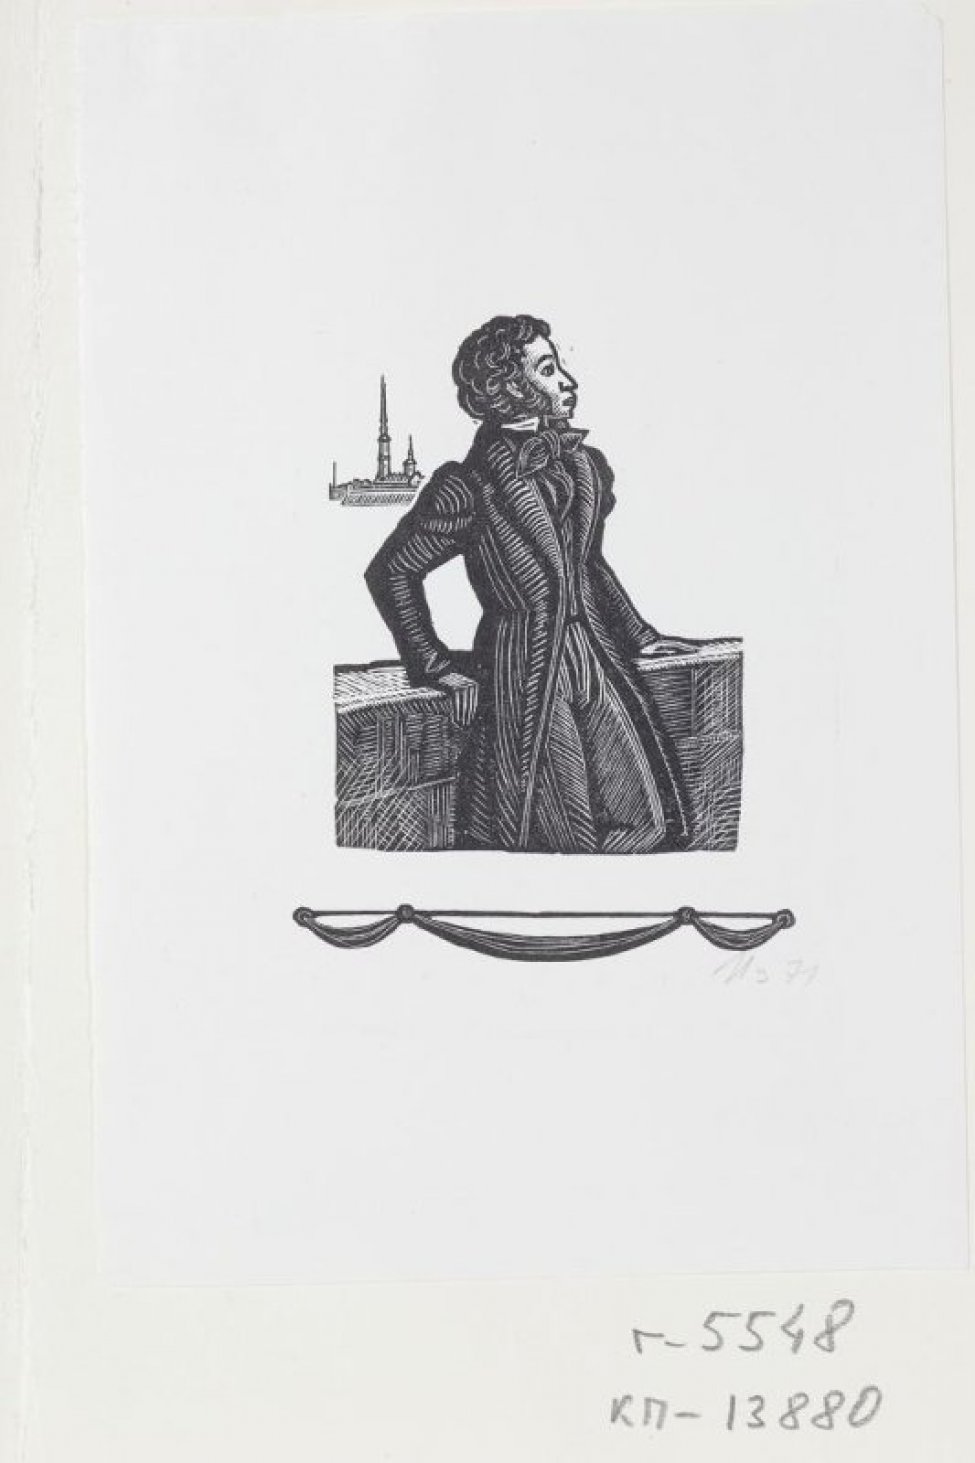 Изображен поколенно в трехчетвертном левом повороте поэт Пушкин Александр Сергеевич, стоящий опираясь на парапет. За ним слева видна Петропавловская крепость.